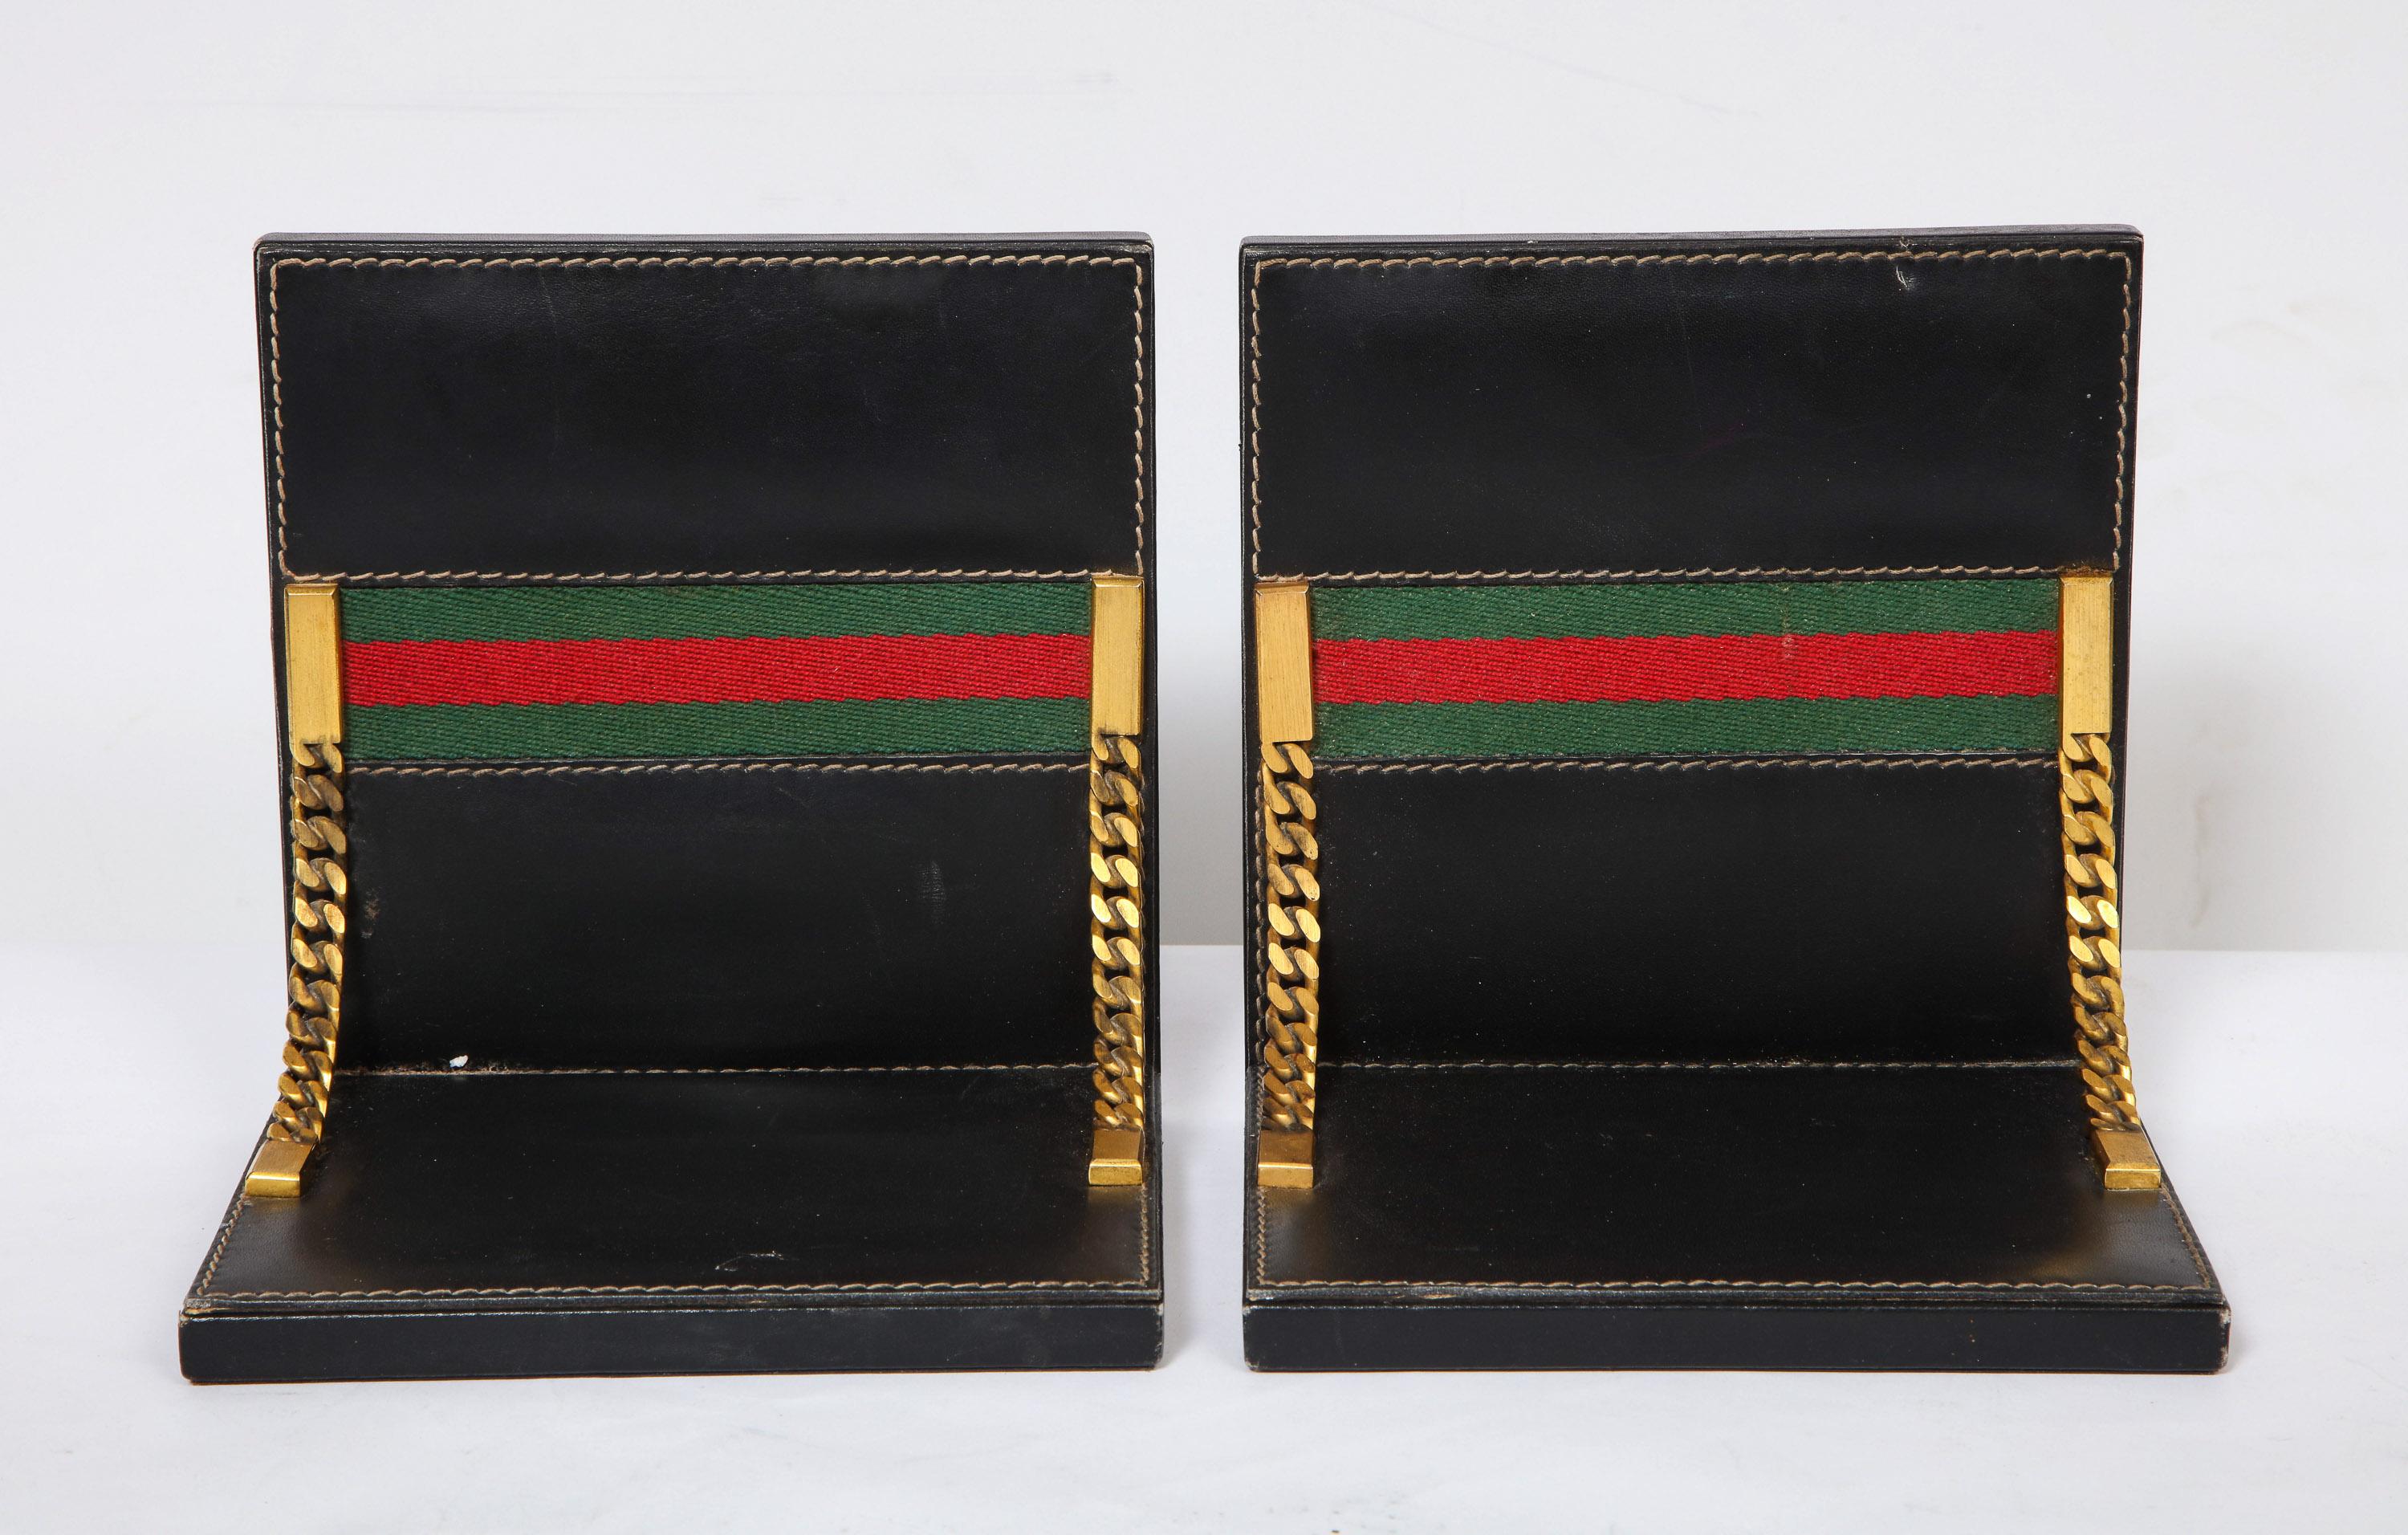 Rare Vintage Gucci 8 Piece Executive Italian Leather Desk Set Accessories, 1979 1